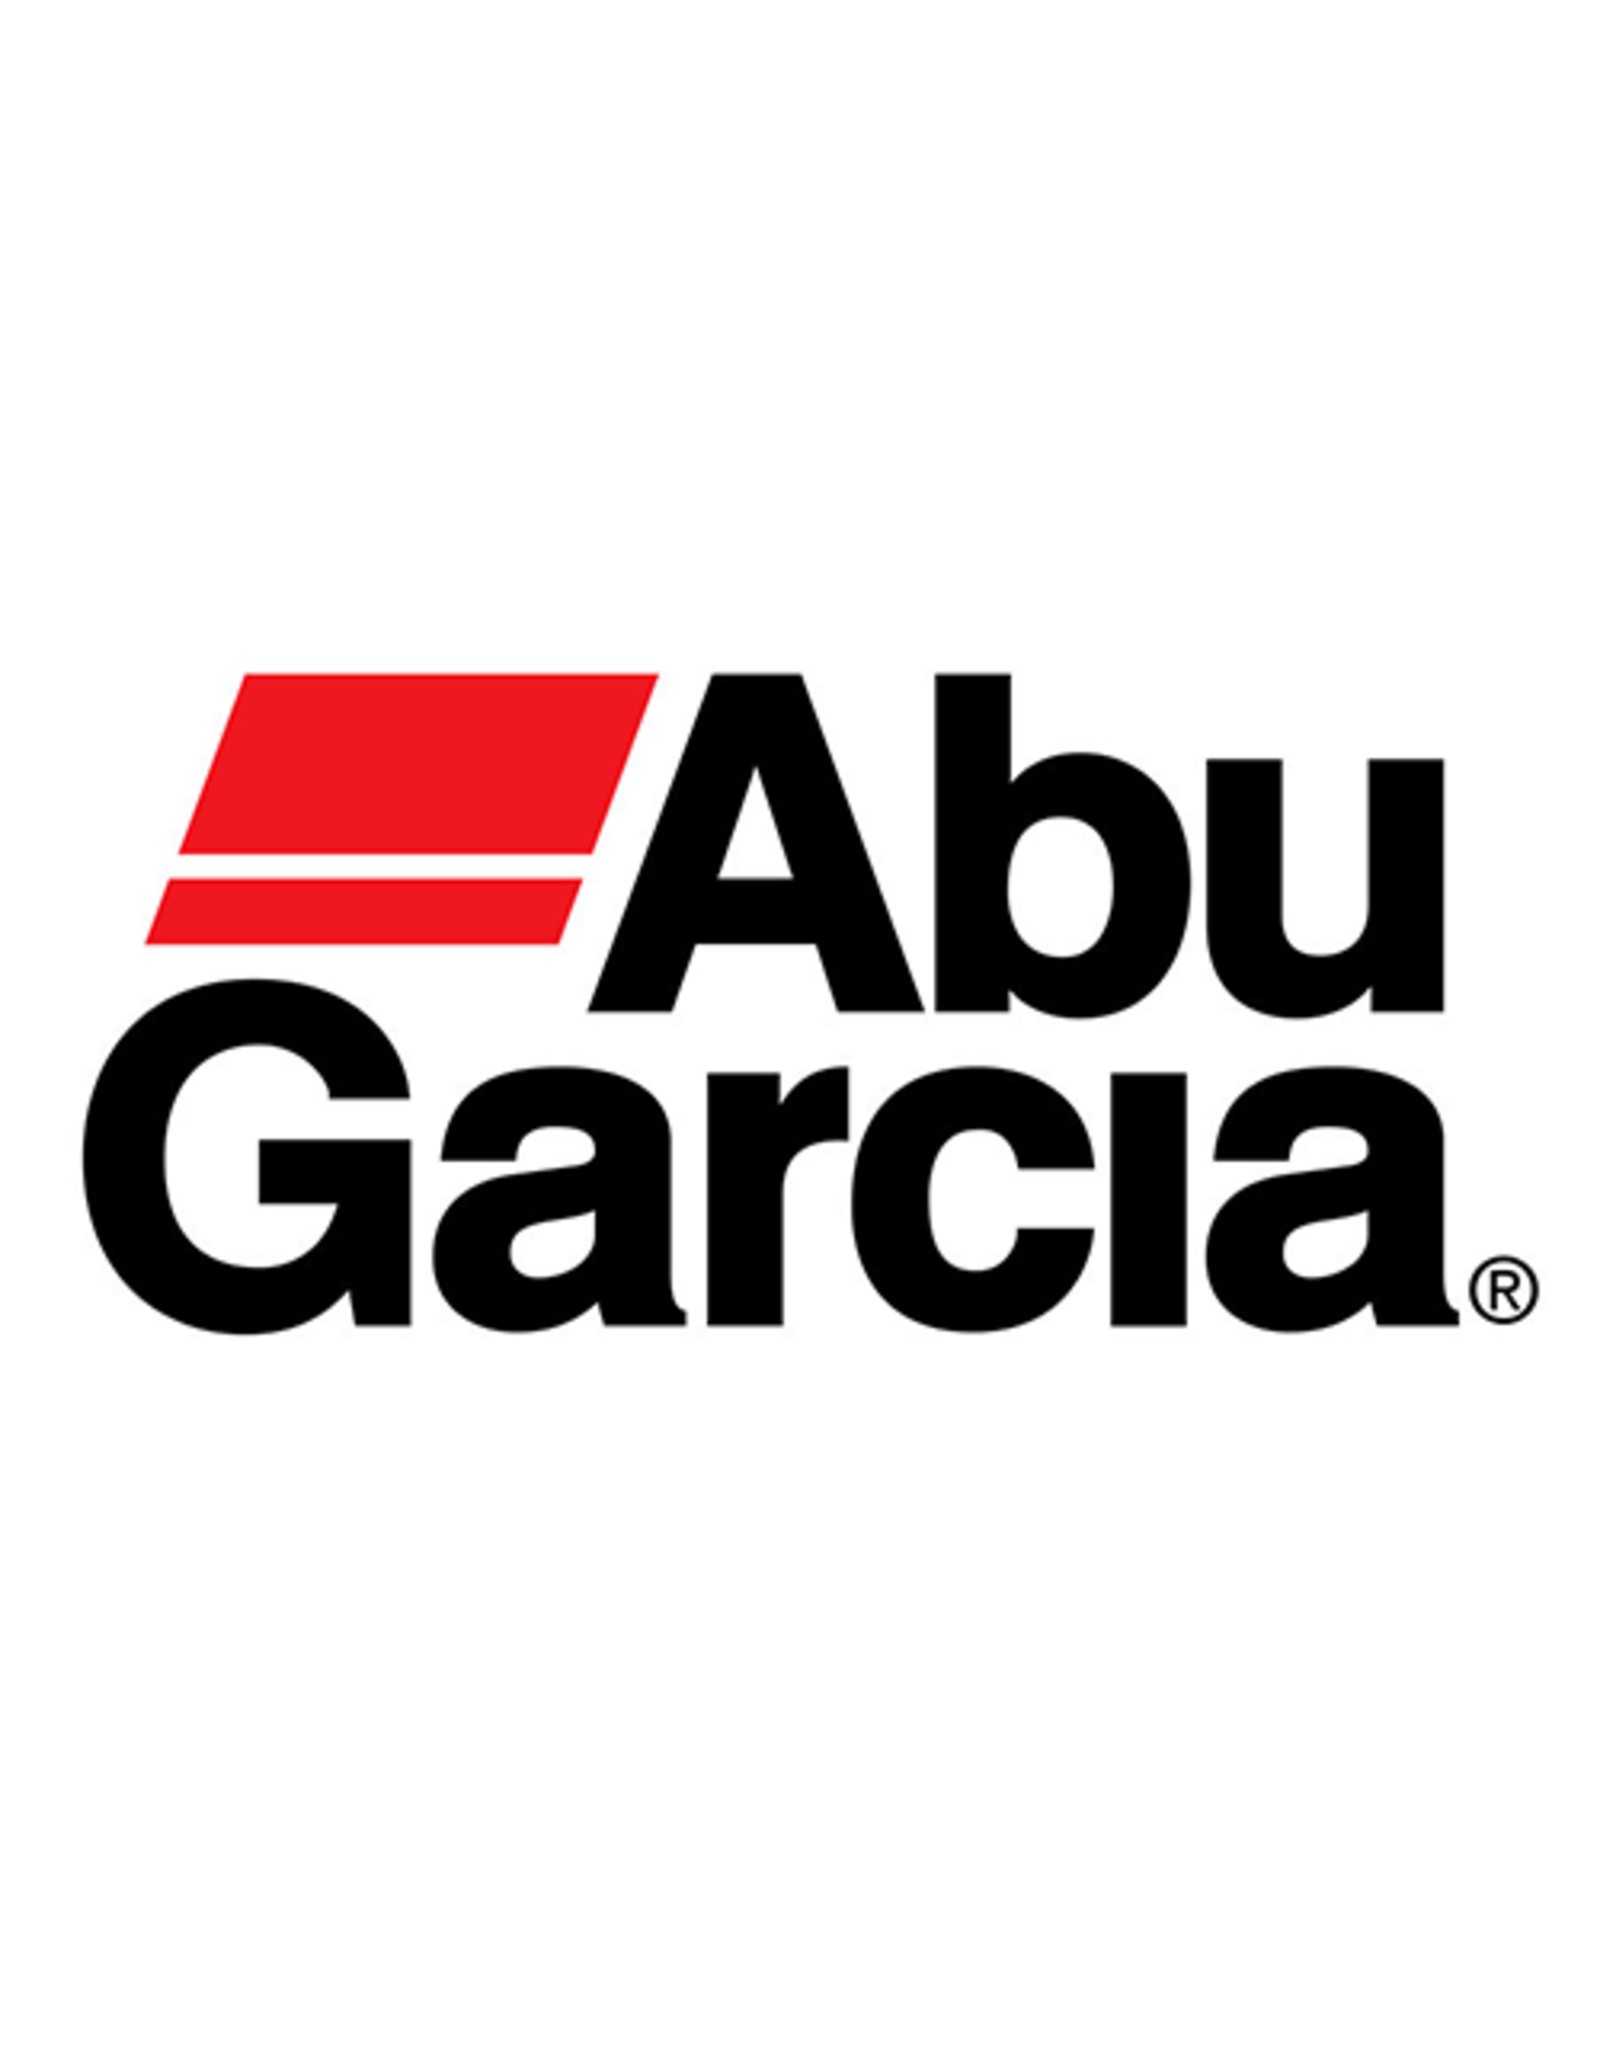 Abu Garcia 37017  CAM/ NLA